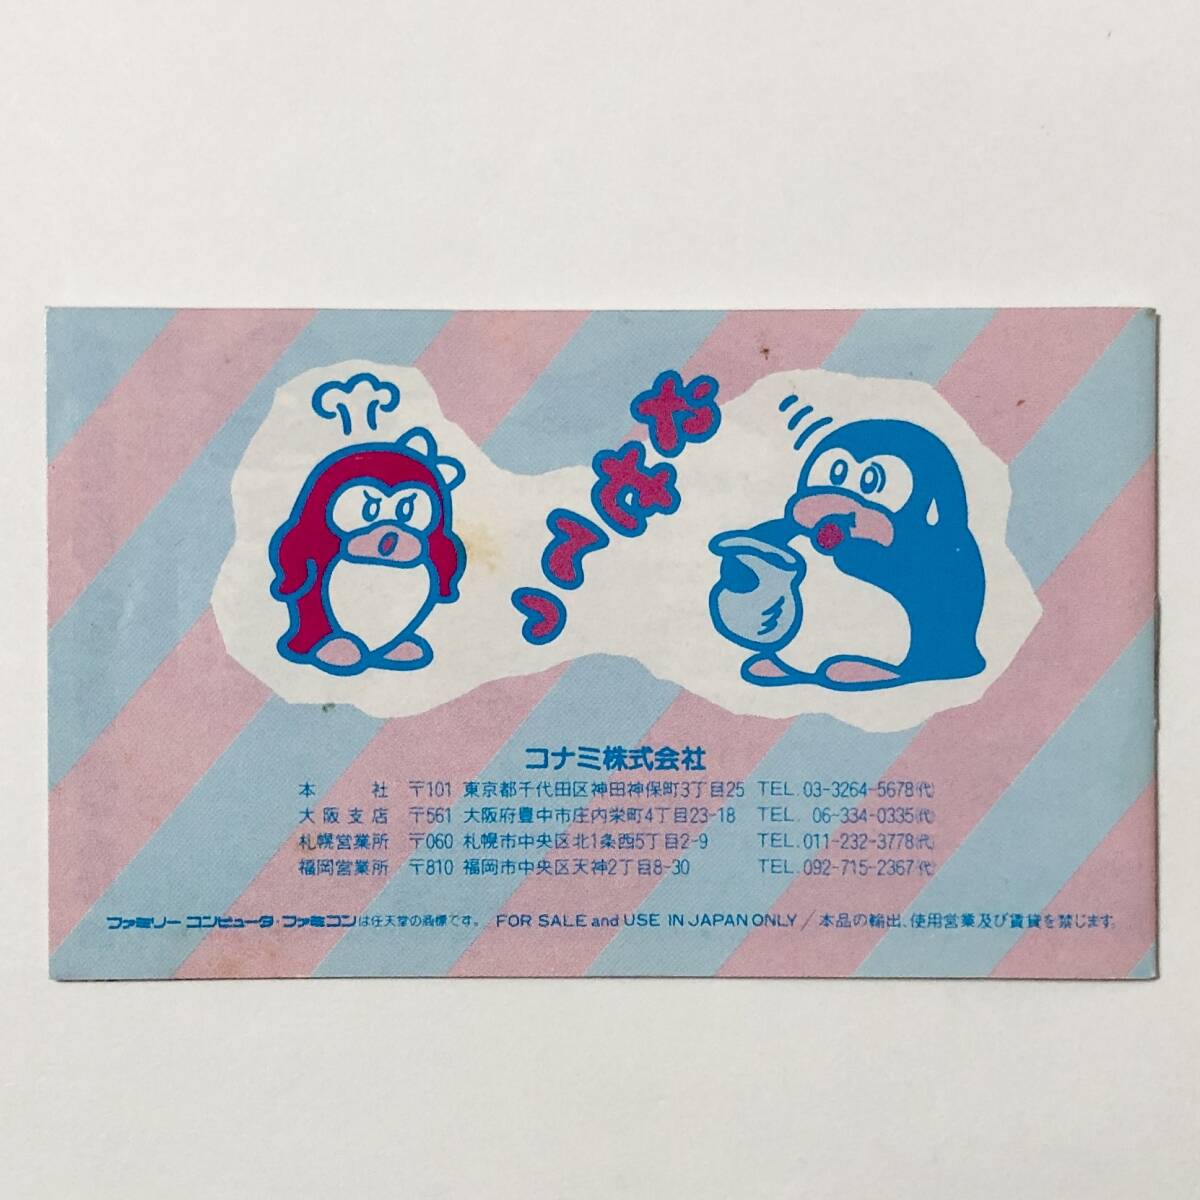 ファミコン 夢ペンギン物語 箱説付き 痛みあり コナミ レトロゲーム Nintendo Famicom Yume Penguin Monogatari CIB Tested Konamiの画像10